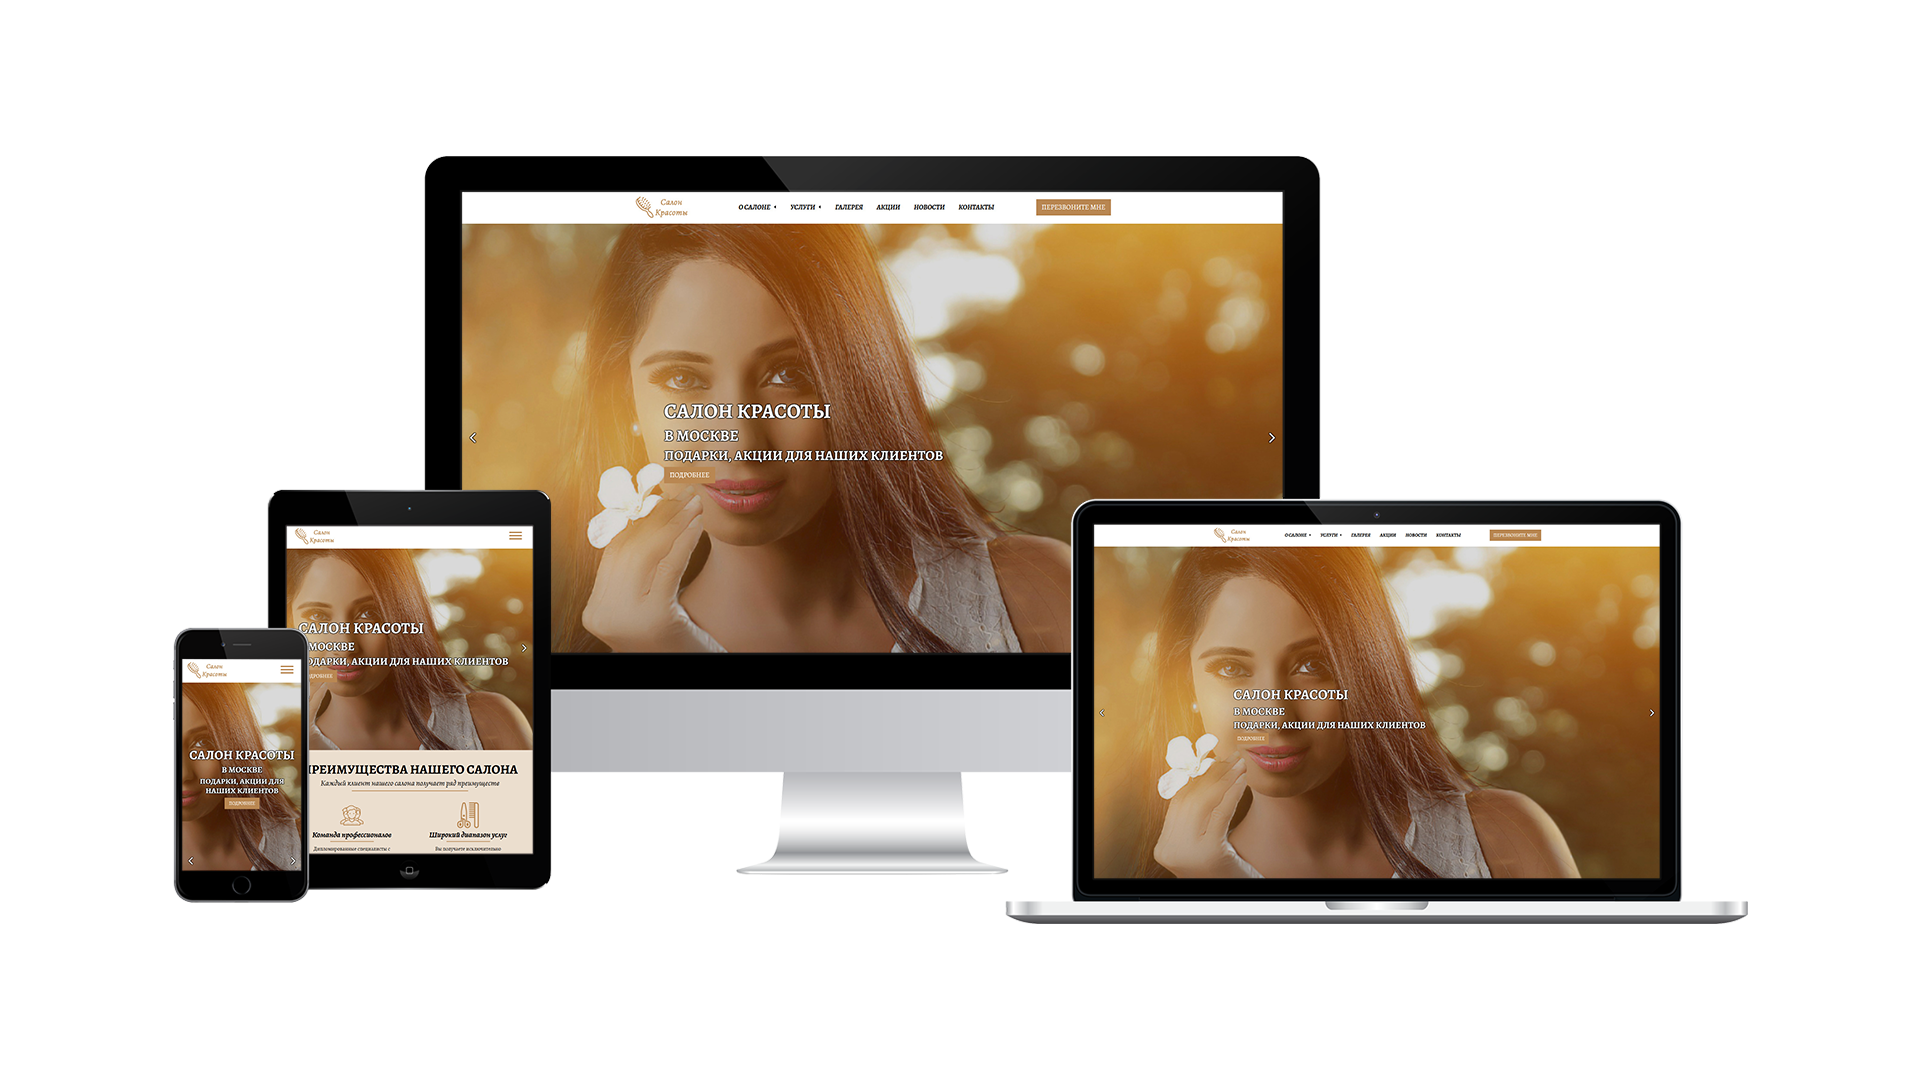 HTML-template of corporate website - Beauty salon